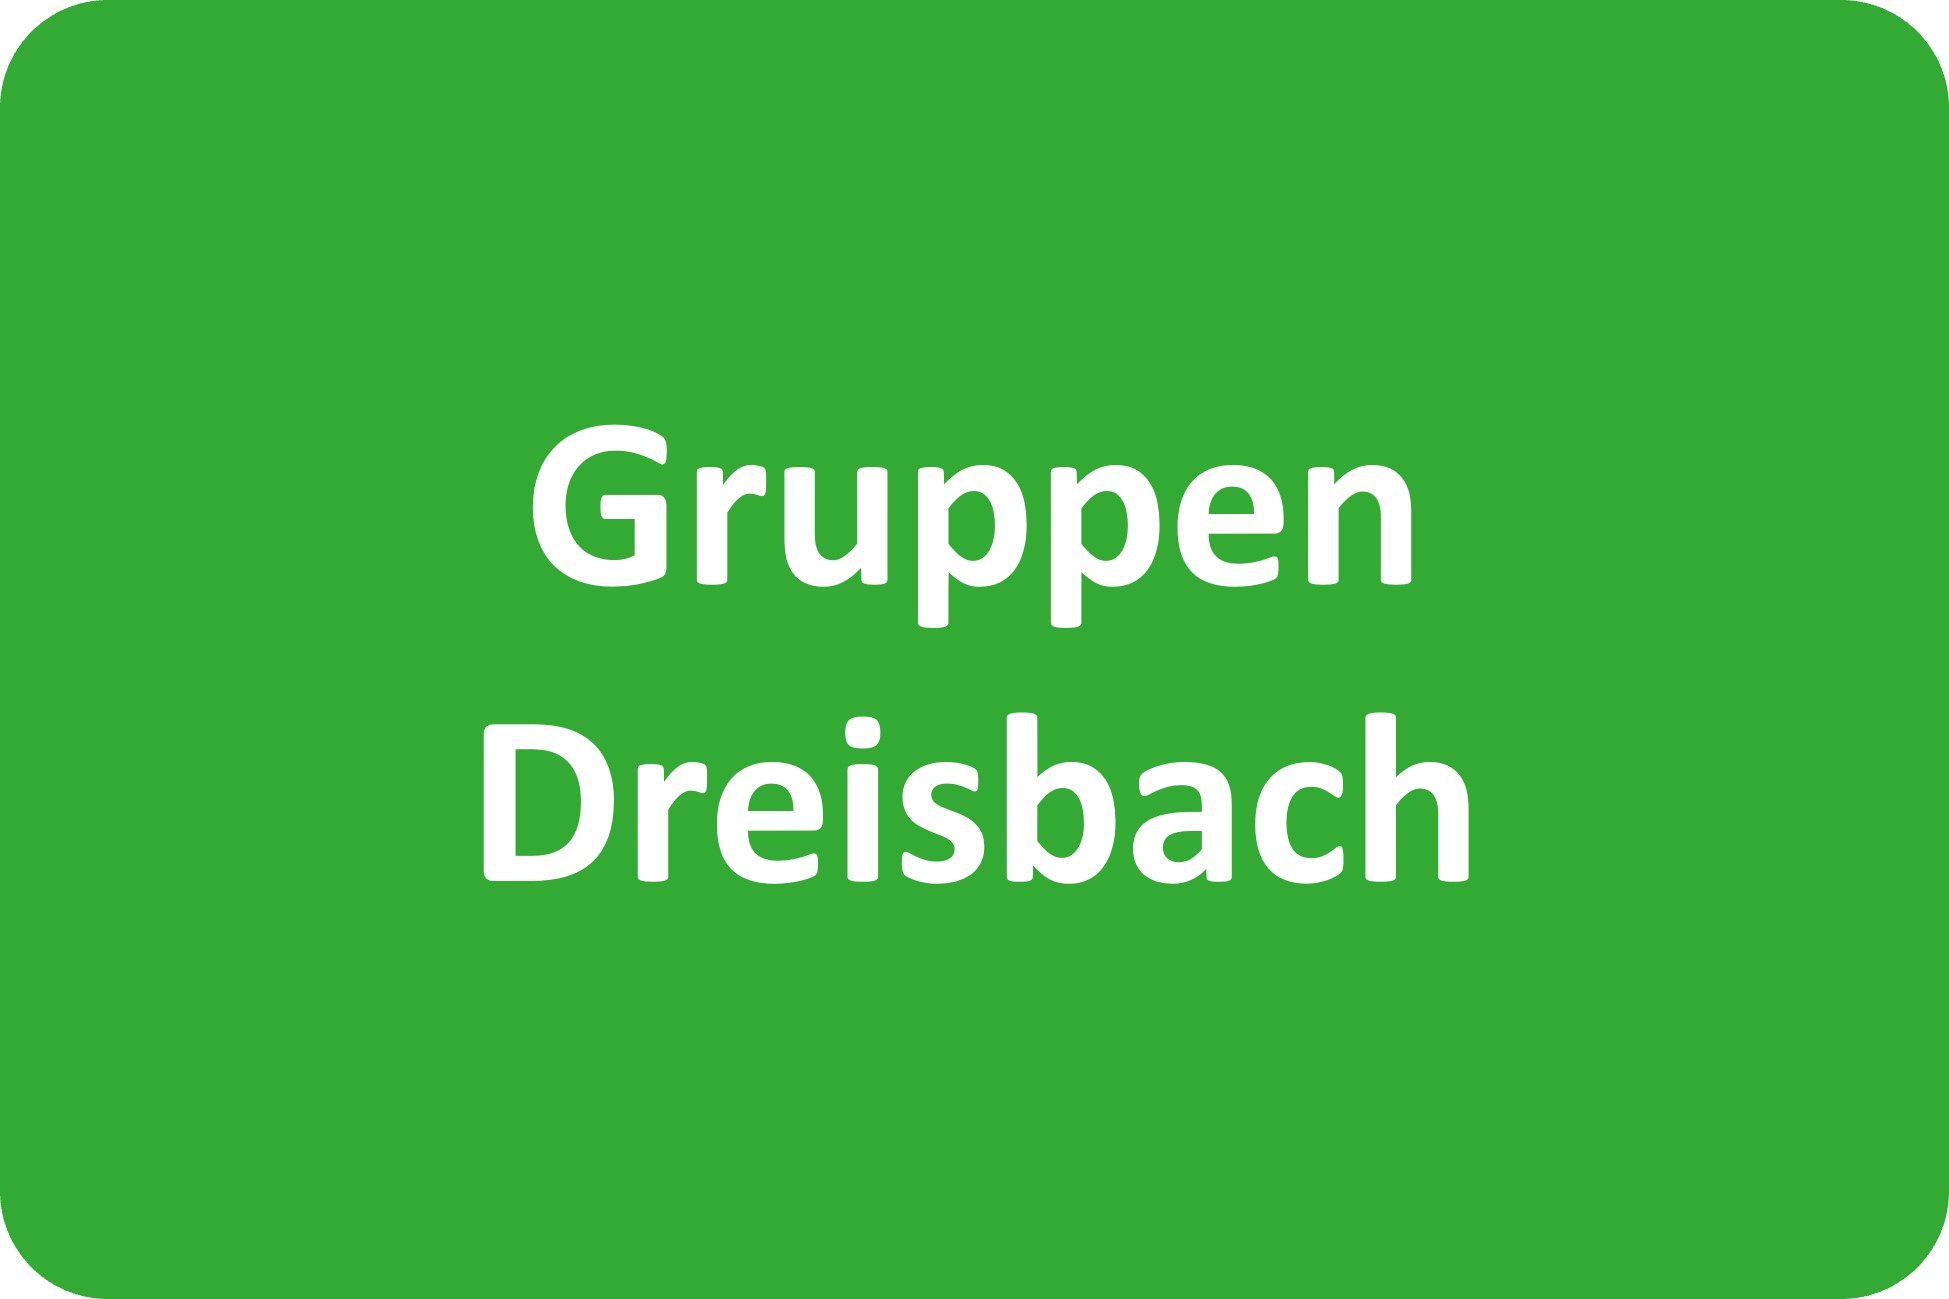 Gruppen in der Dreisbach